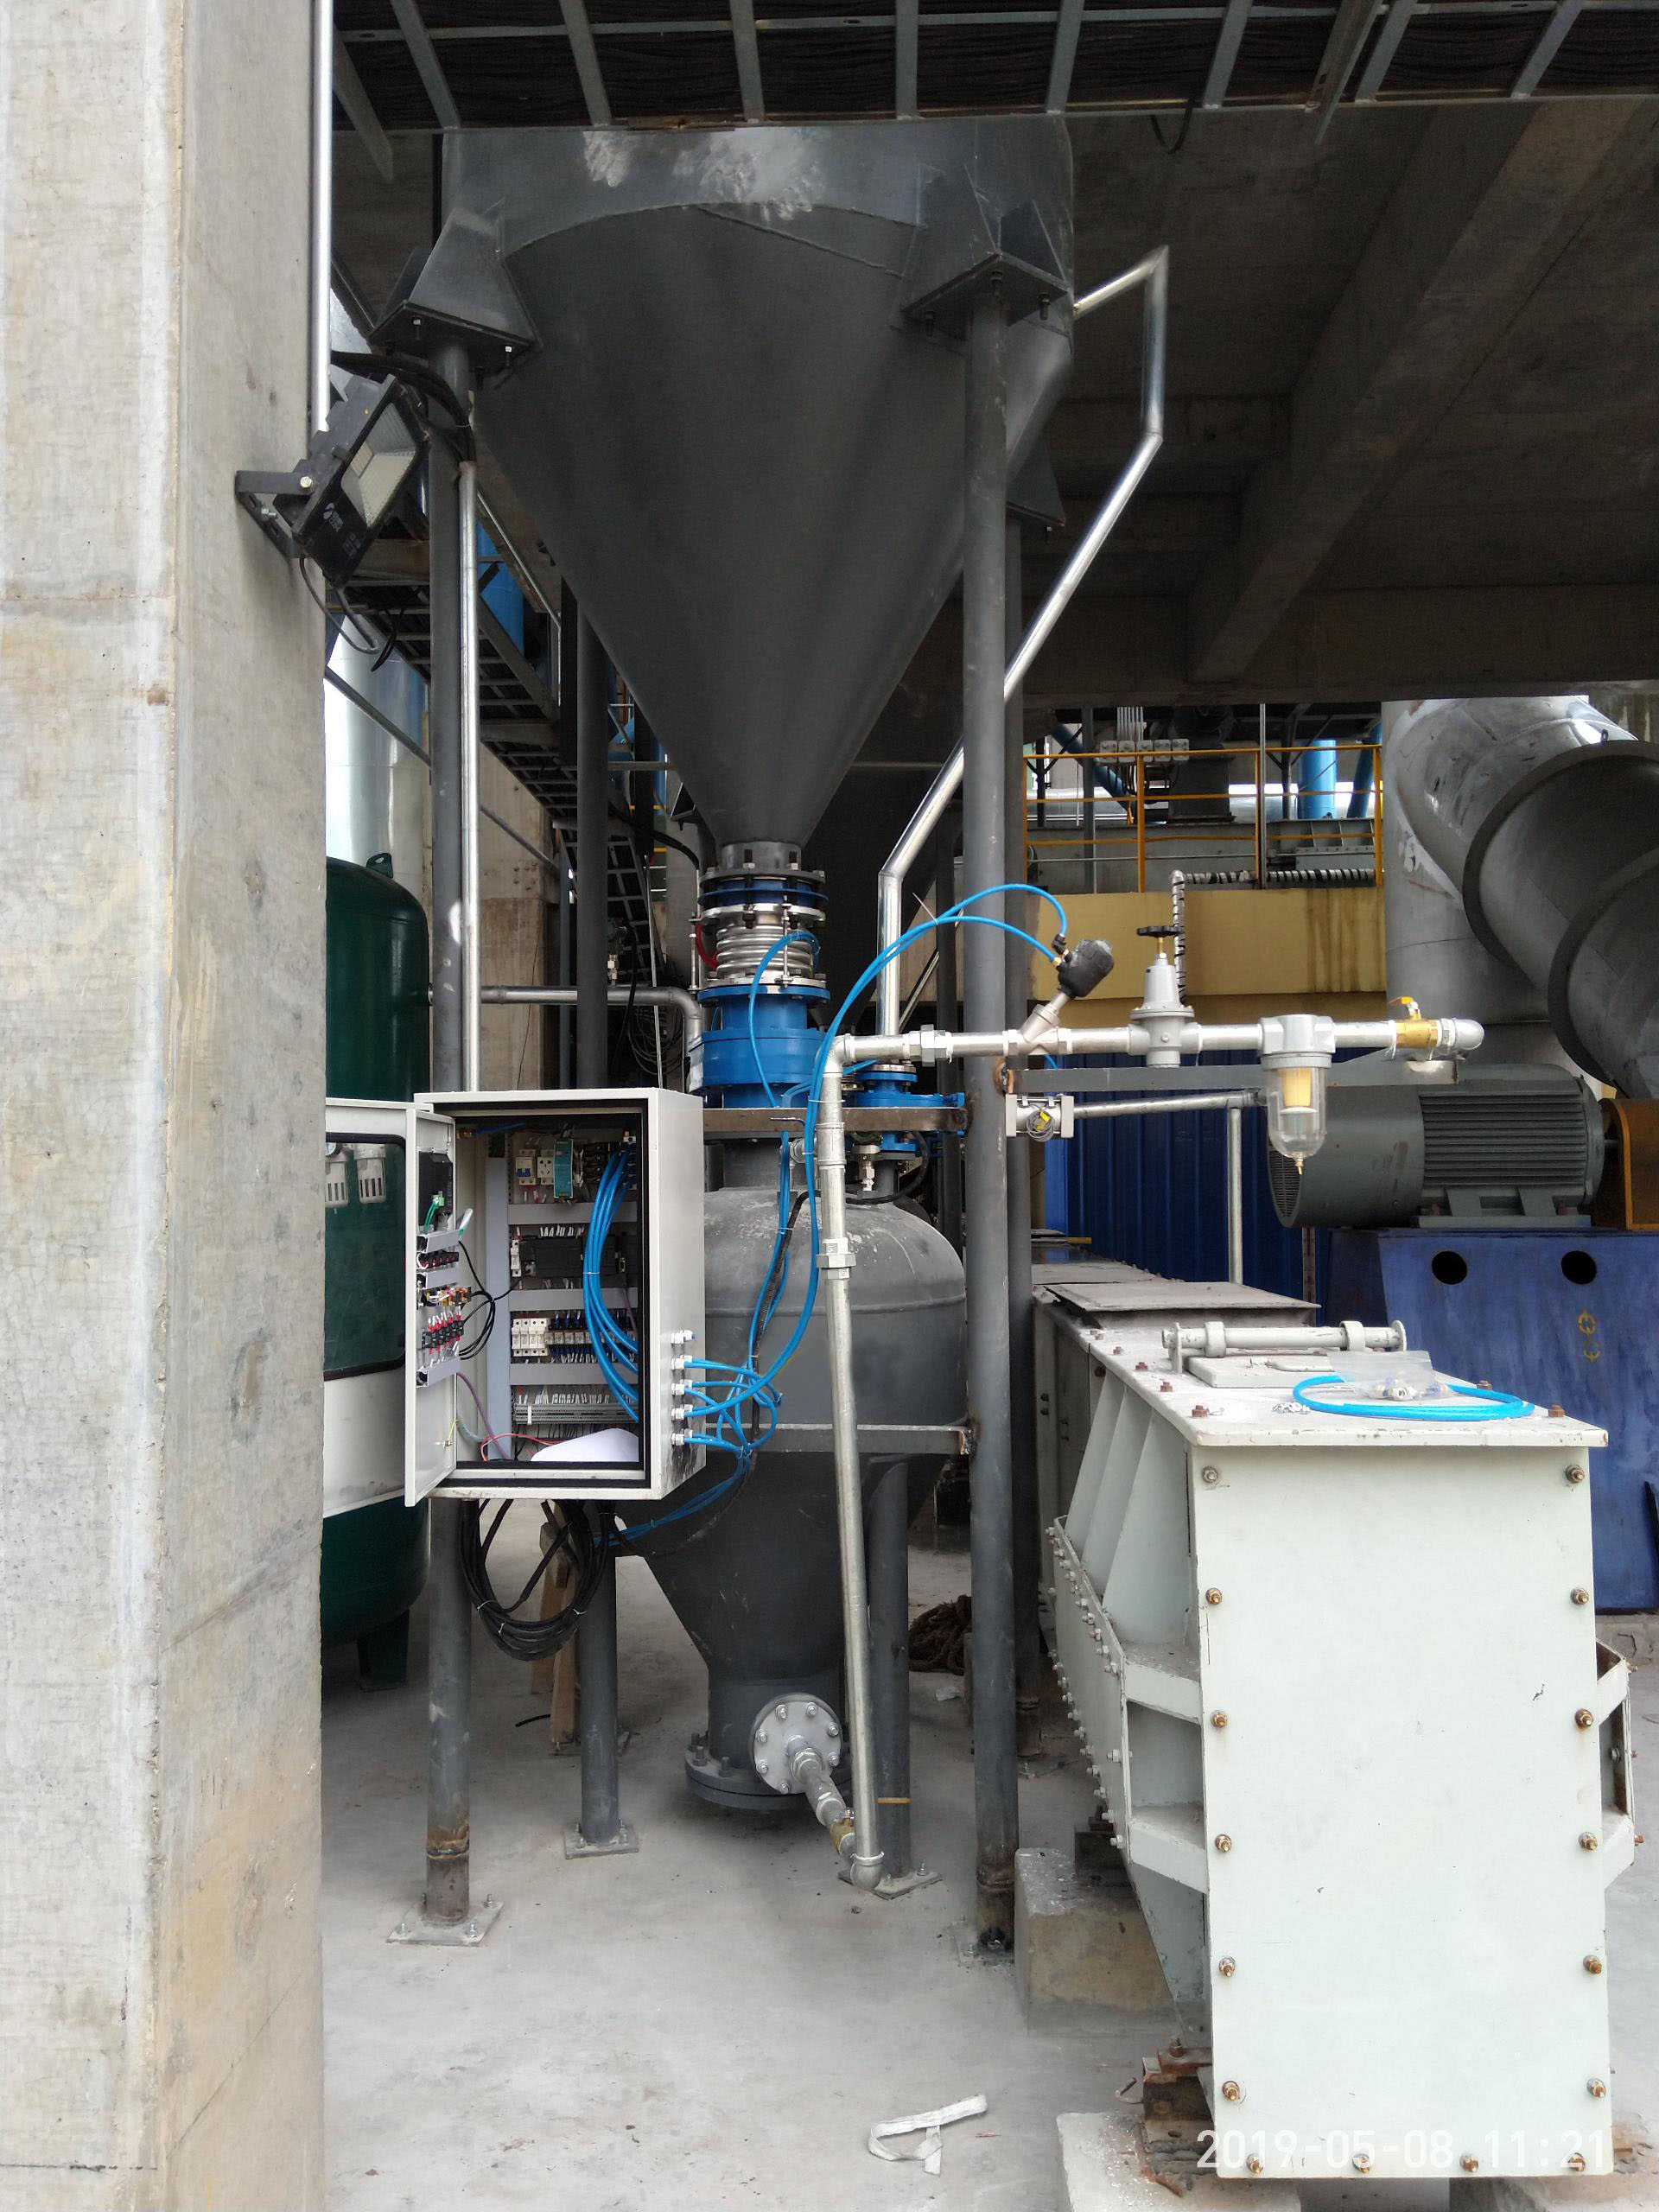 陕西榆林仓泵浓相气力输送系统案例